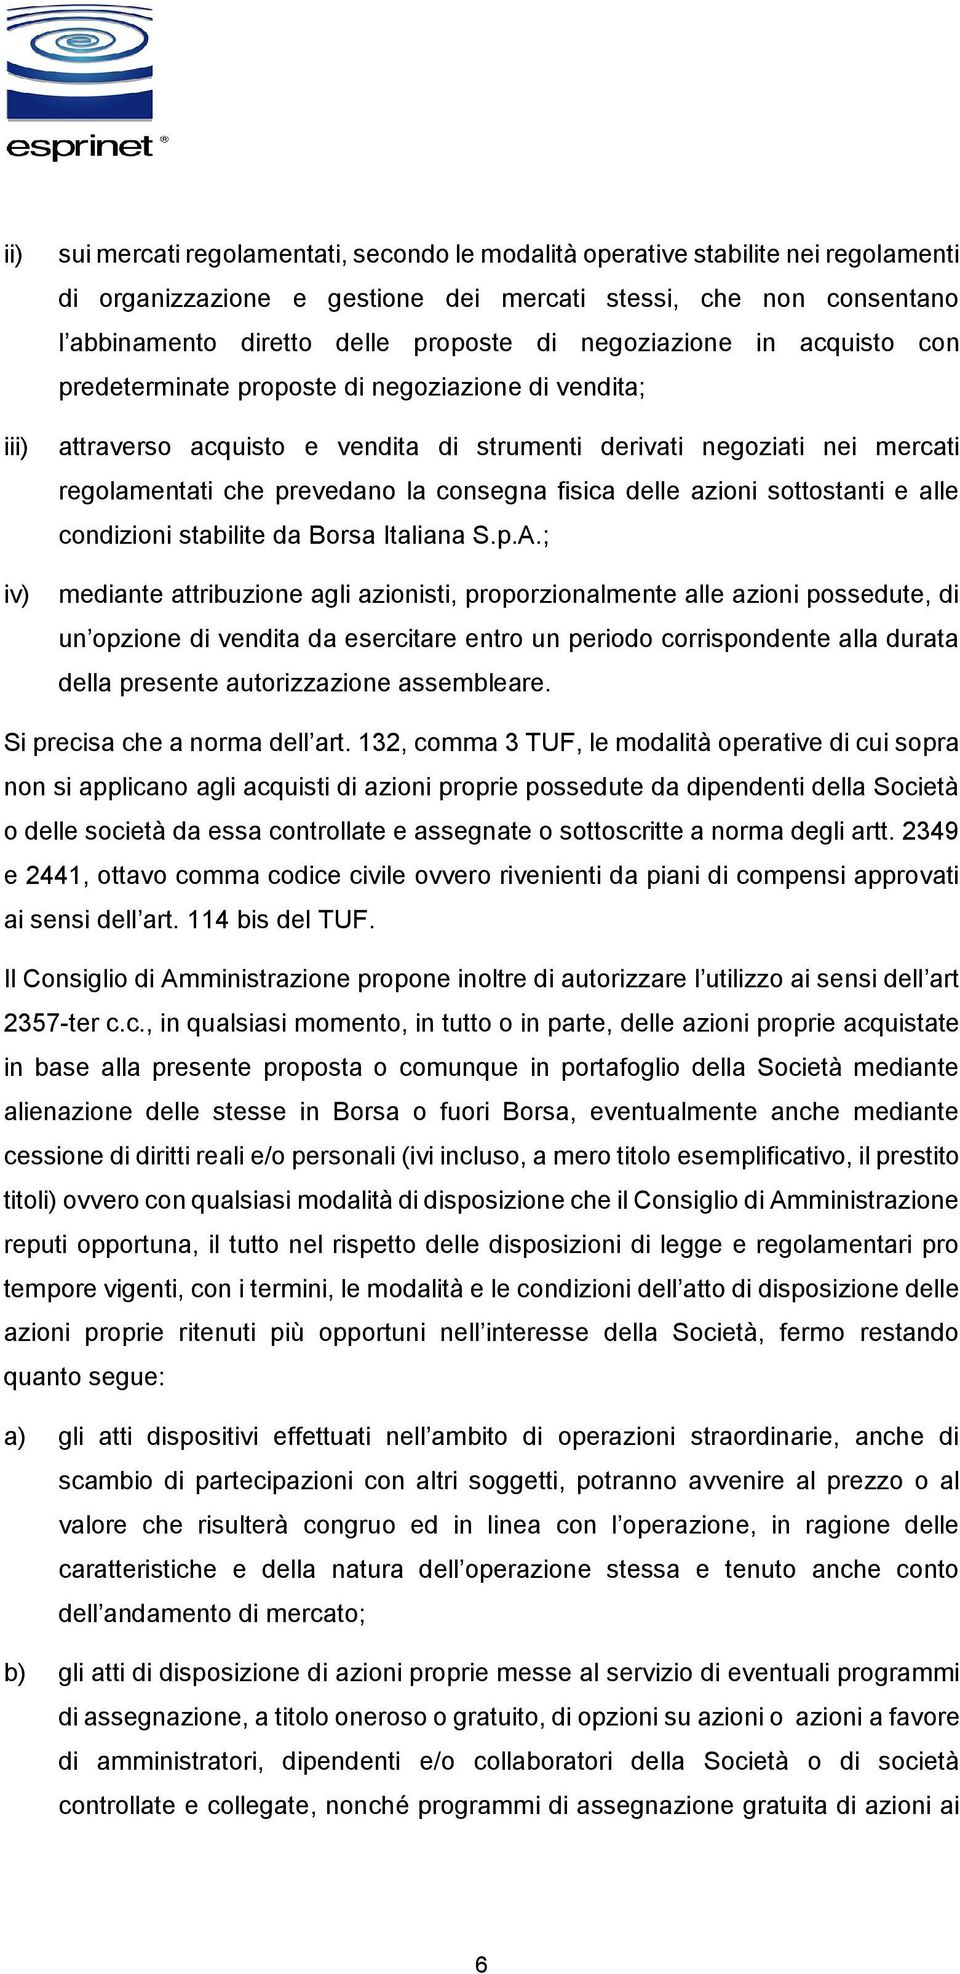 consegna fisica delle azioni sottostanti e alle condizioni stabilite da Borsa Italiana S.p.A.